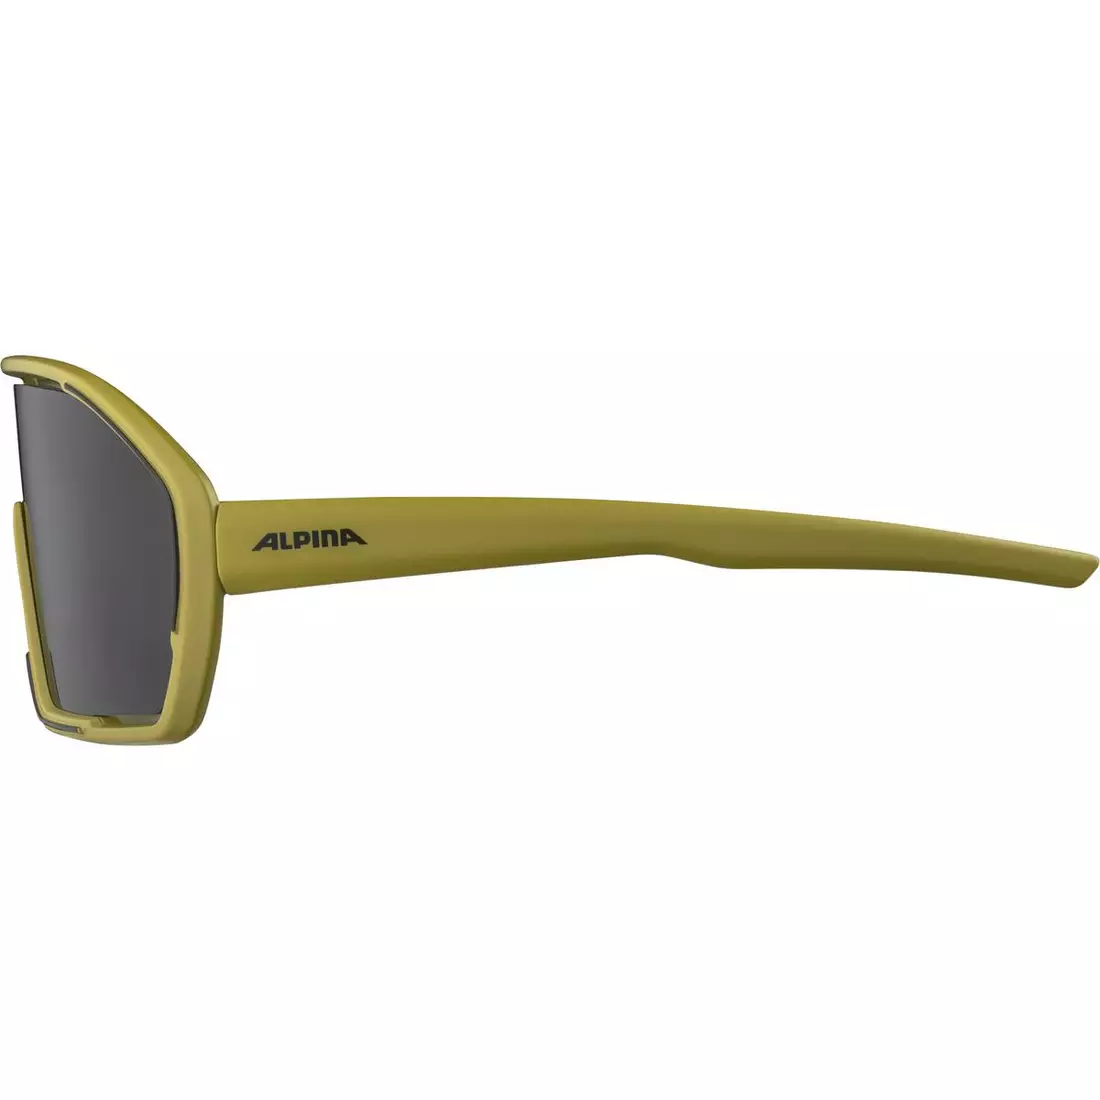 ALPINA Sports glasses BONFIRE OLIVE MATT - MIRROR BLACK, A8687472